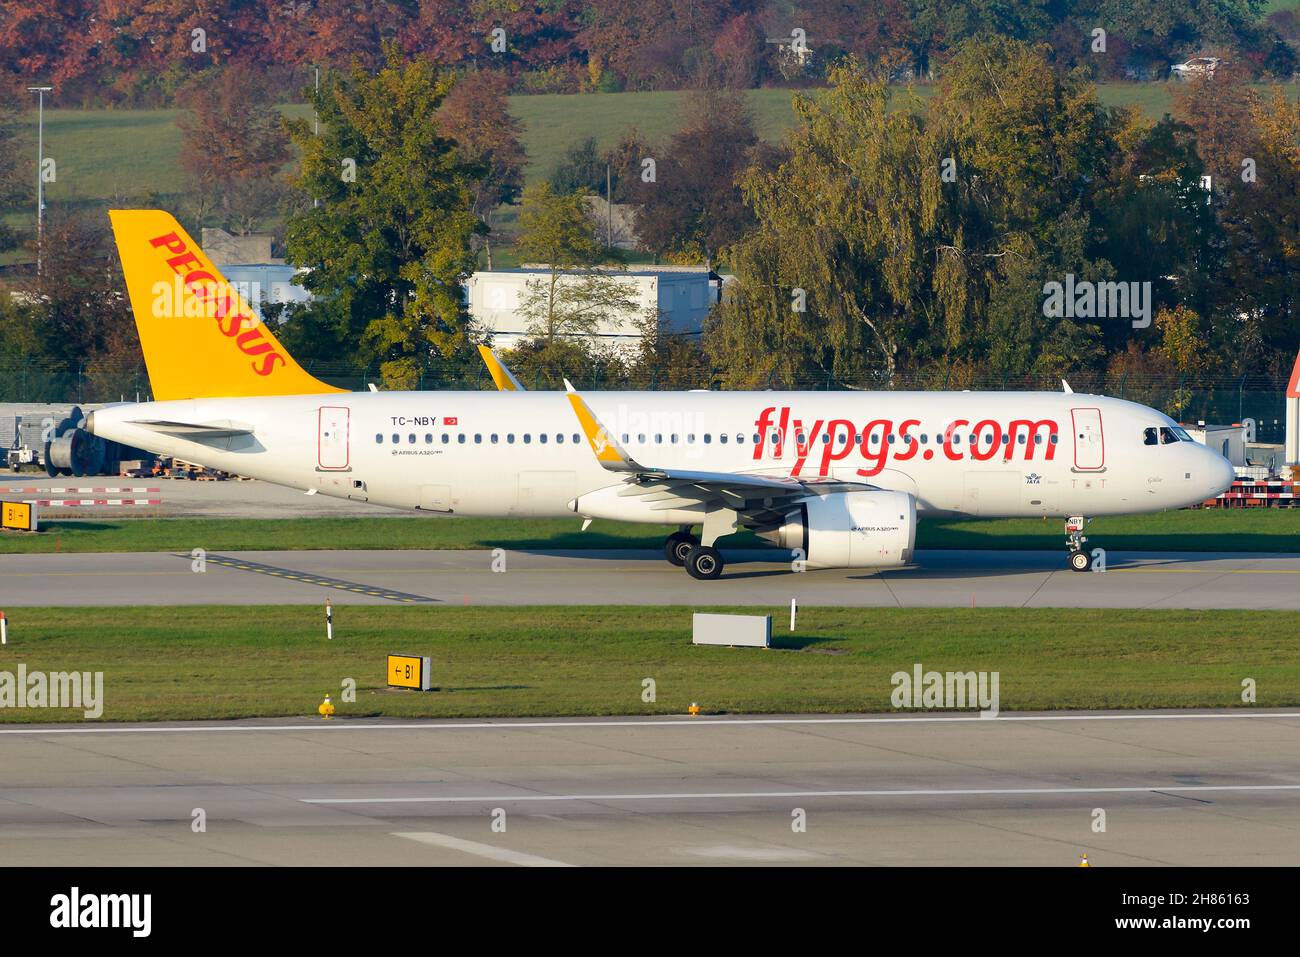 Aereo Pegasus Airlines Airbus A320N che tasserà prima della partenza. Pegasus è una linea aerea a basso costo forma Turchia. Velivolo con il titolo Fly Pegasus. Foto Stock